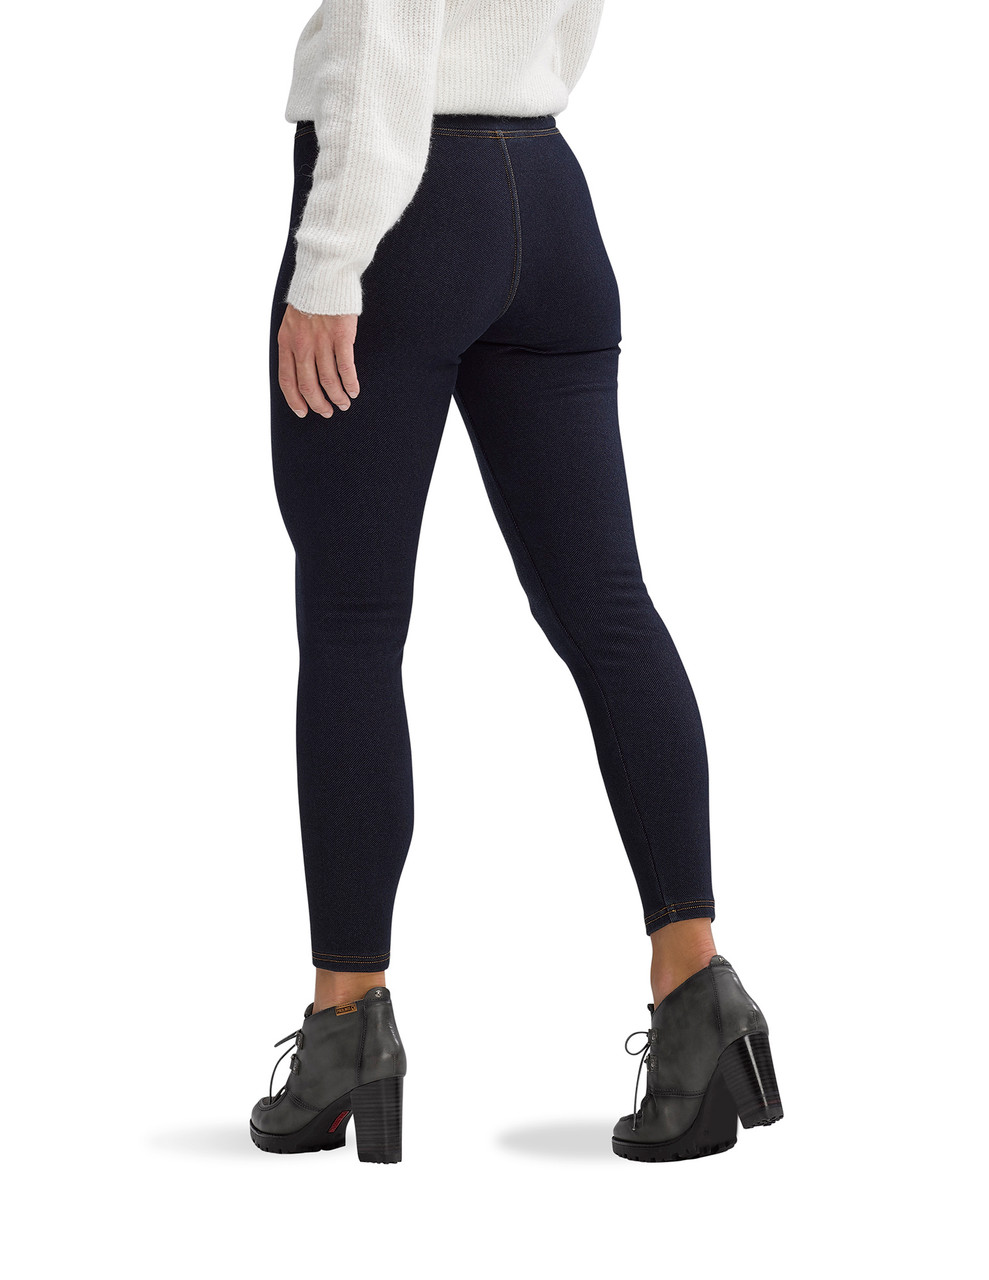 Girls plush teal top / black legging Calvin Klein Jean set size XS 5/6 NEW